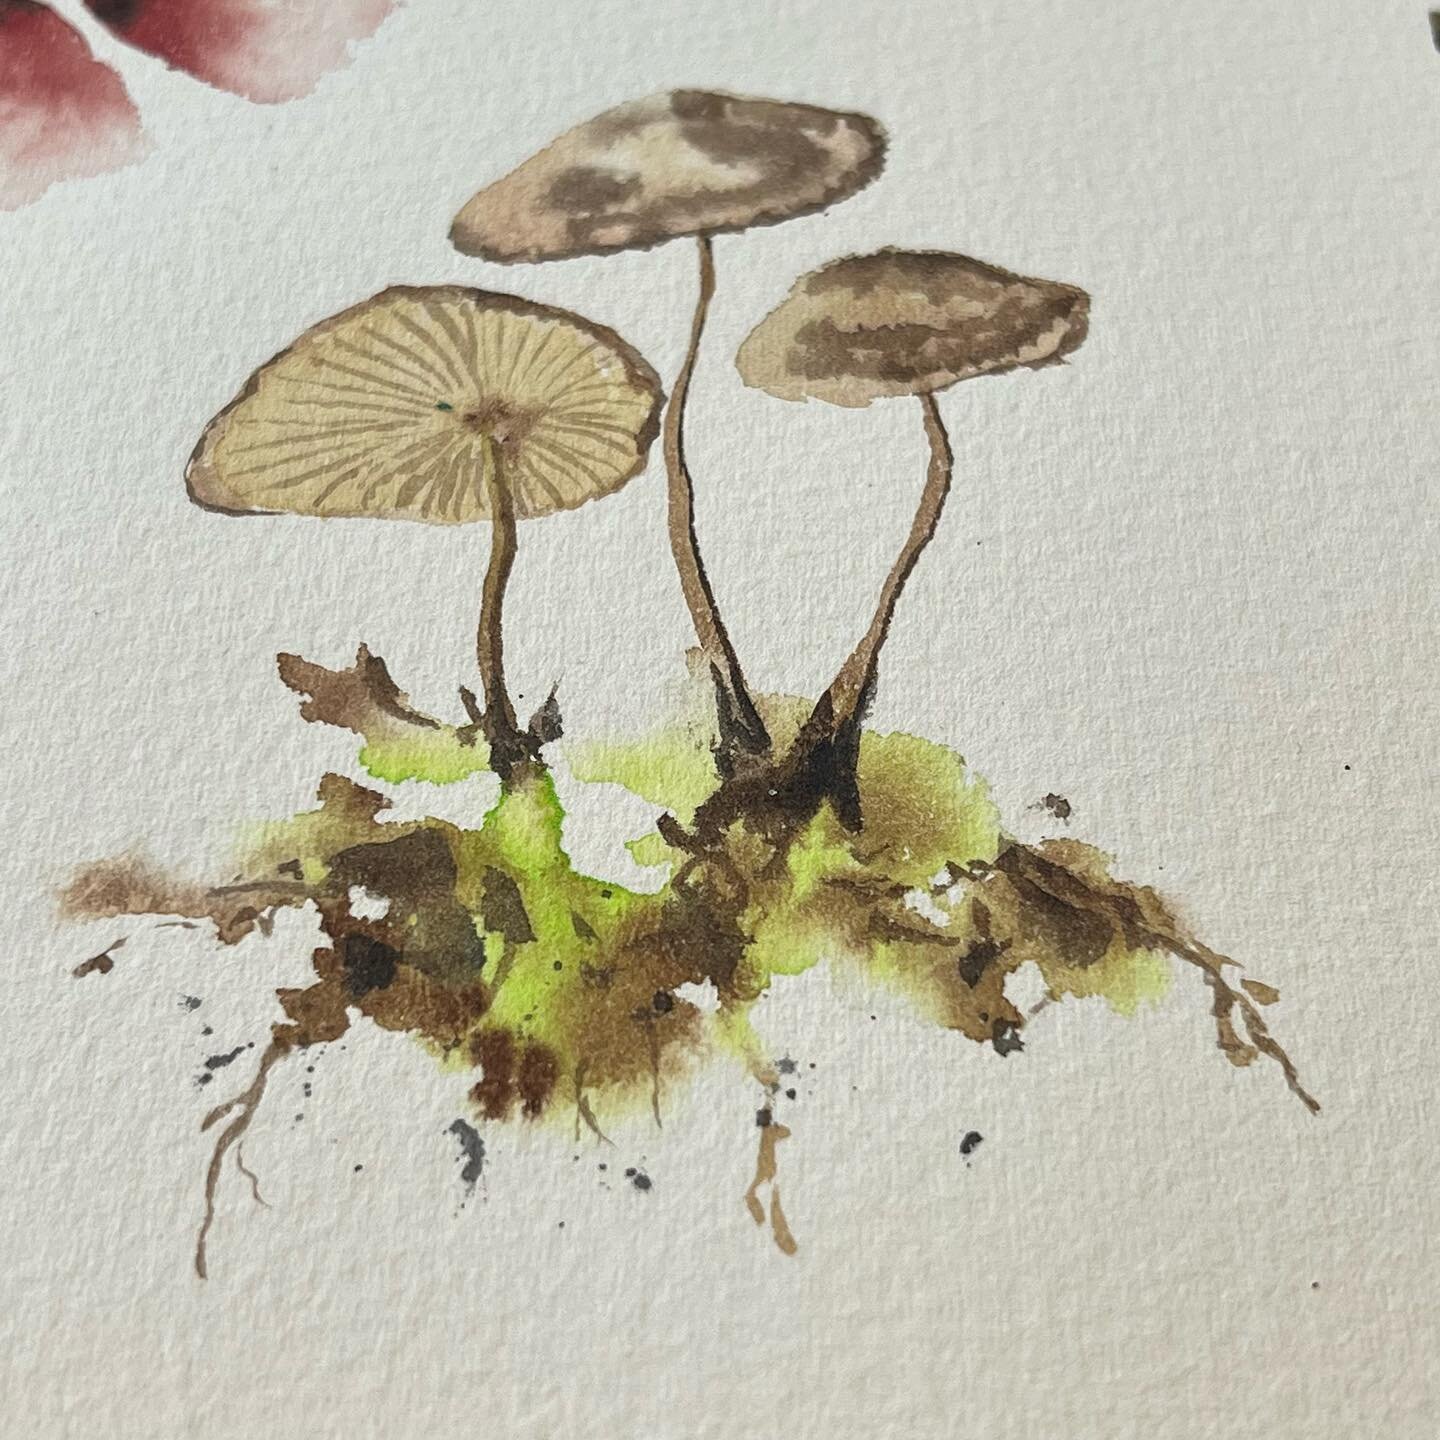 Friday - sketchbook - mushrooms 🍄 
.
.
.
#watercolor #watercolorsketch #watercolorsketchbook #coloredpencil #coloredpencilbotanical #botanicalsketchbook #painteveryday #mushroomart